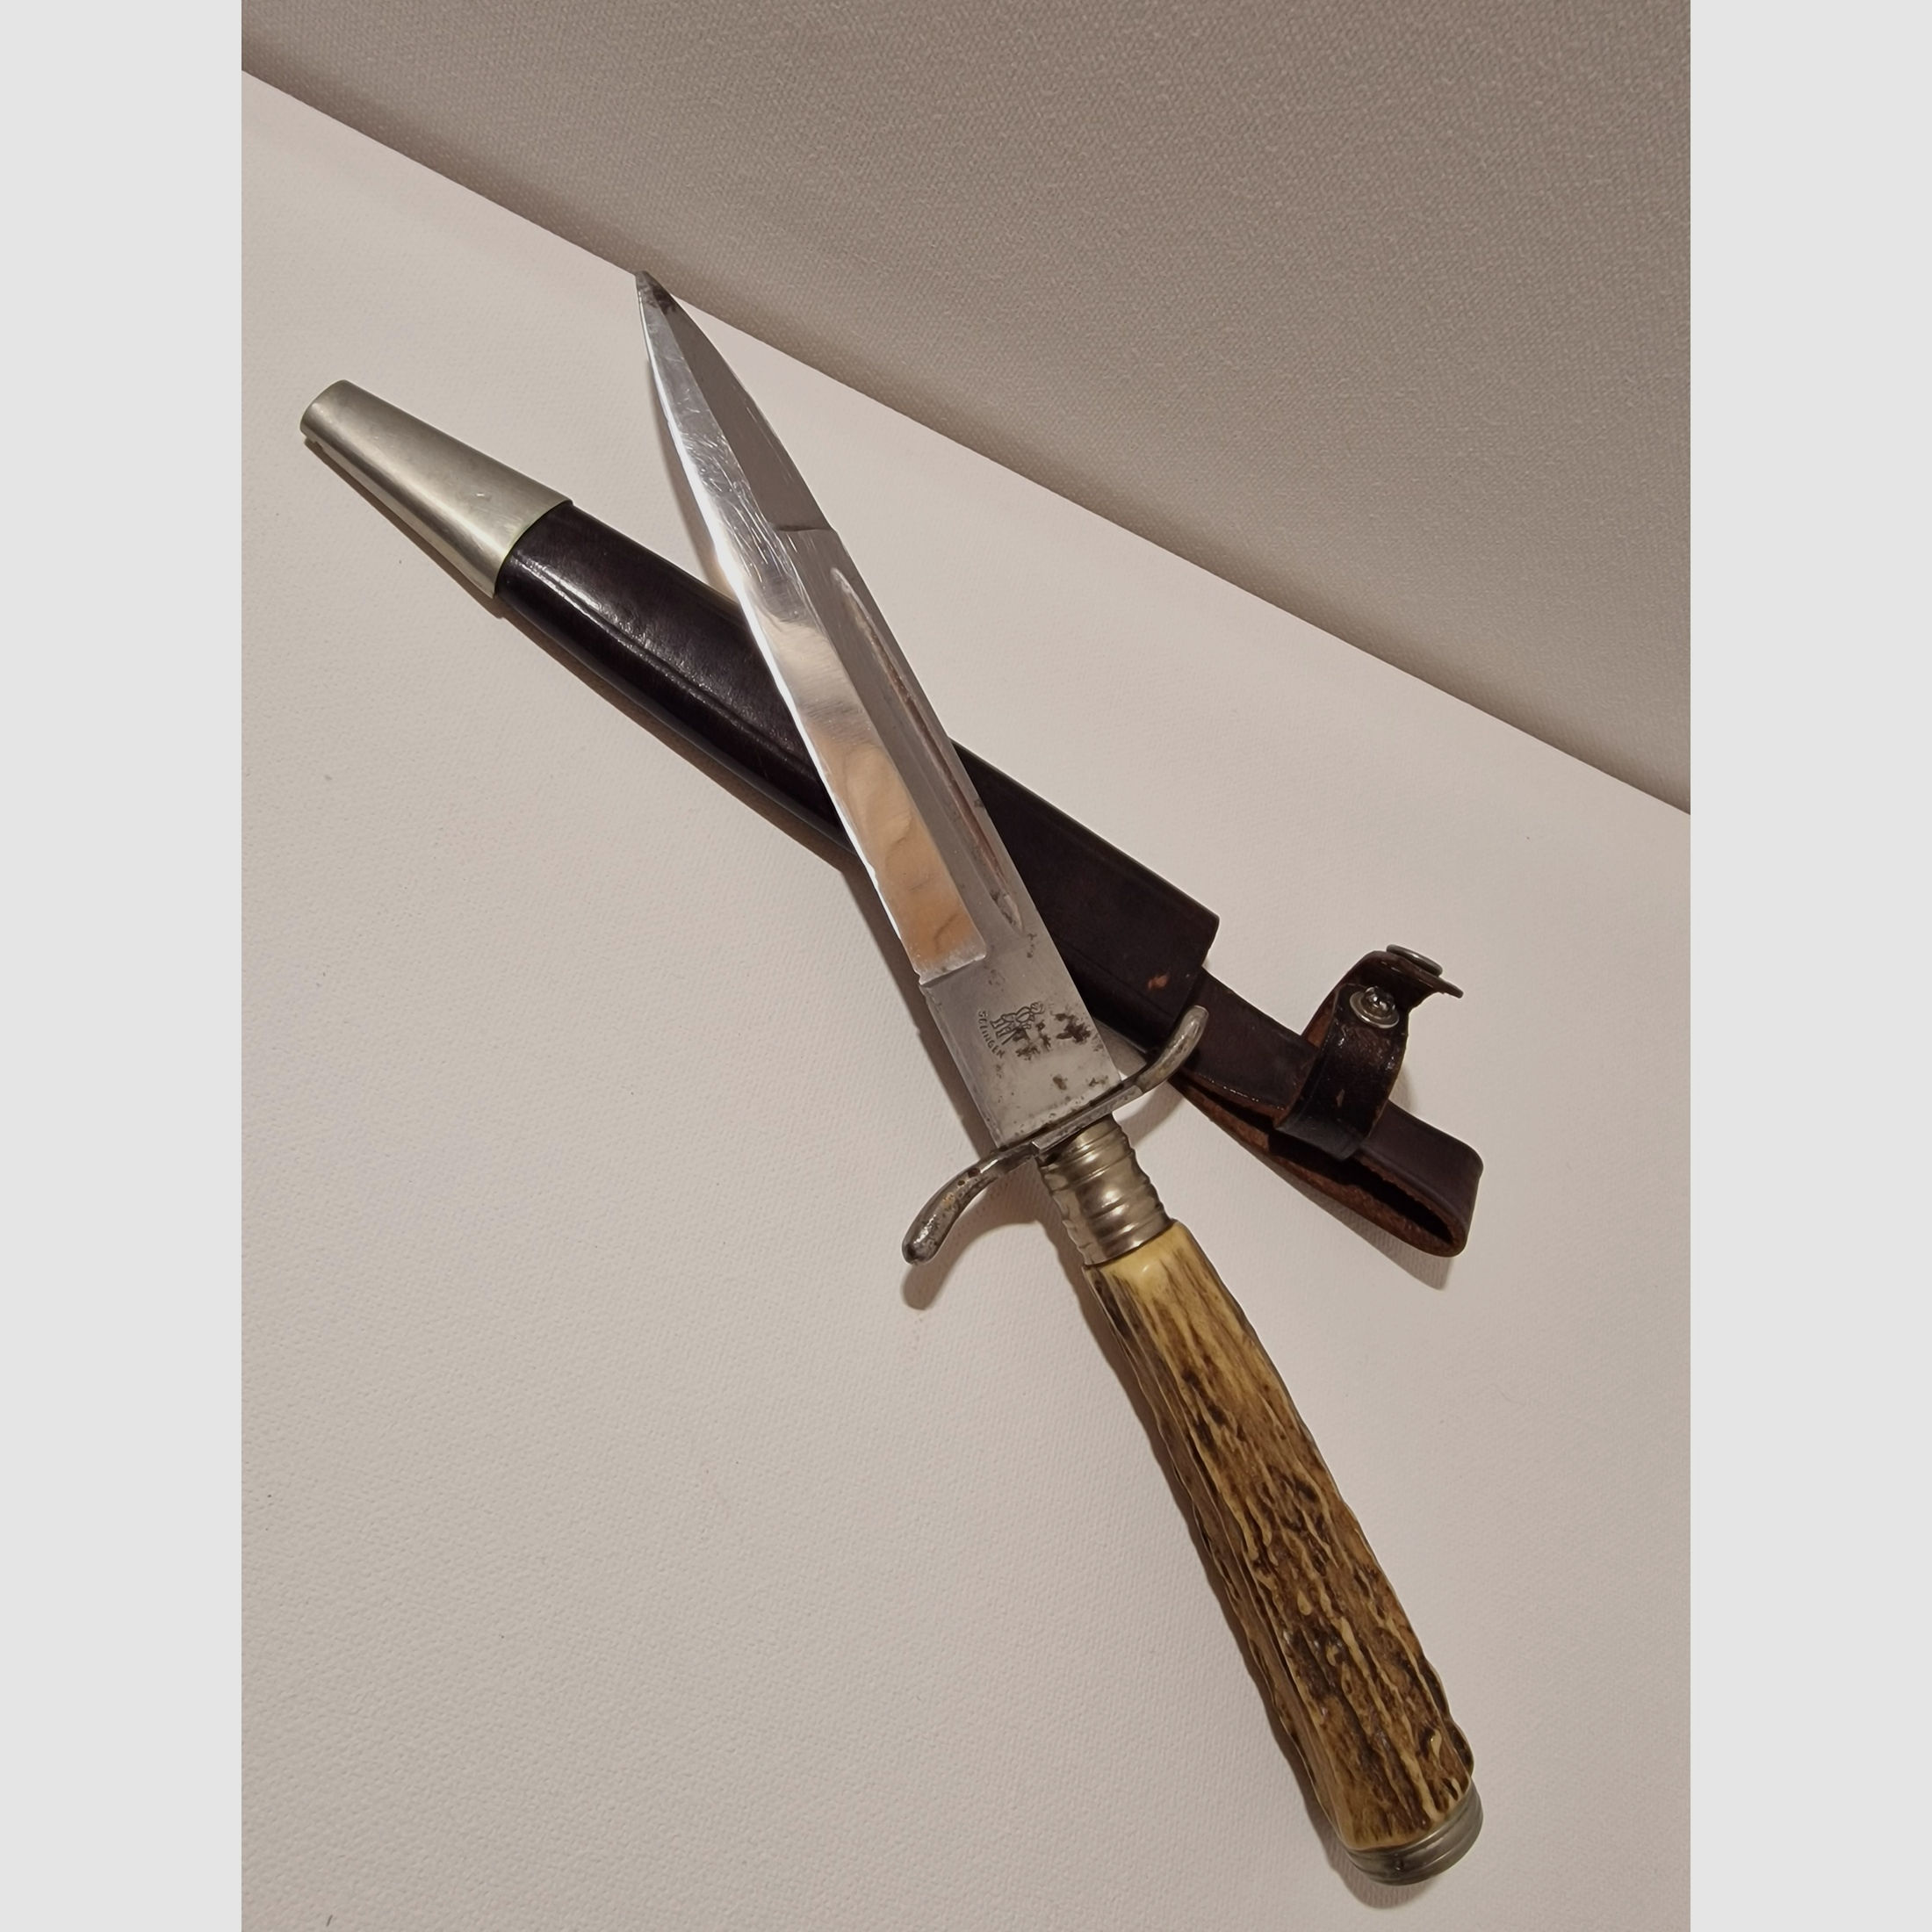 Jagdmesser Solingen, Klingenlänge von 13,5 cm, Hirschhorn